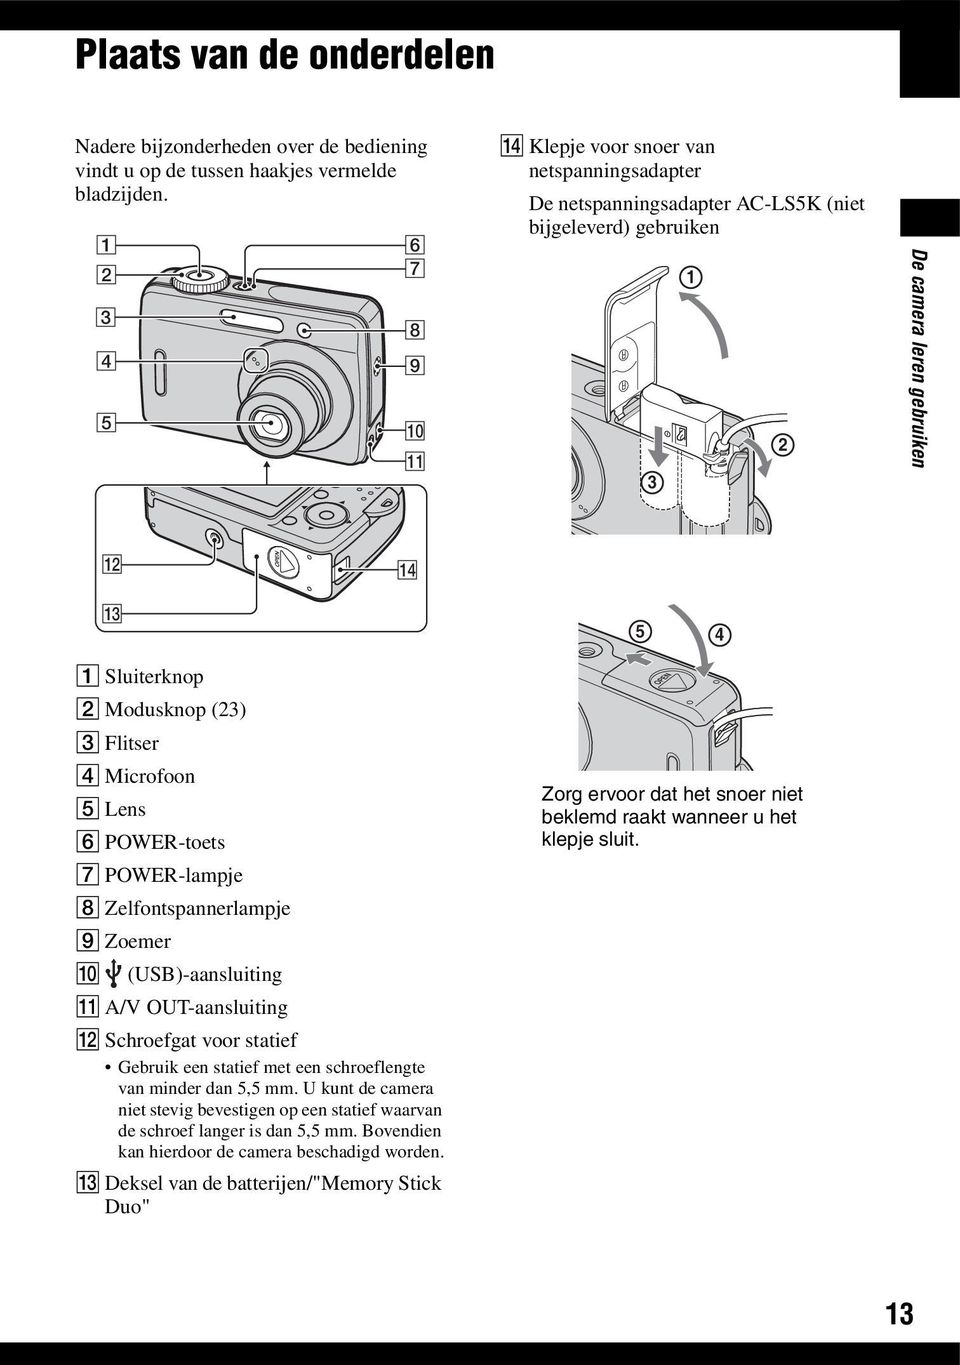 (23) C Flitser D Microfoon E Lens F POWER-toets G POWER-lampje H Zelfontspannerlampje I Zoemer J (USB)-aansluiting K A/V OUT-aansluiting L Schroefgat voor statief Gebruik een statief met een